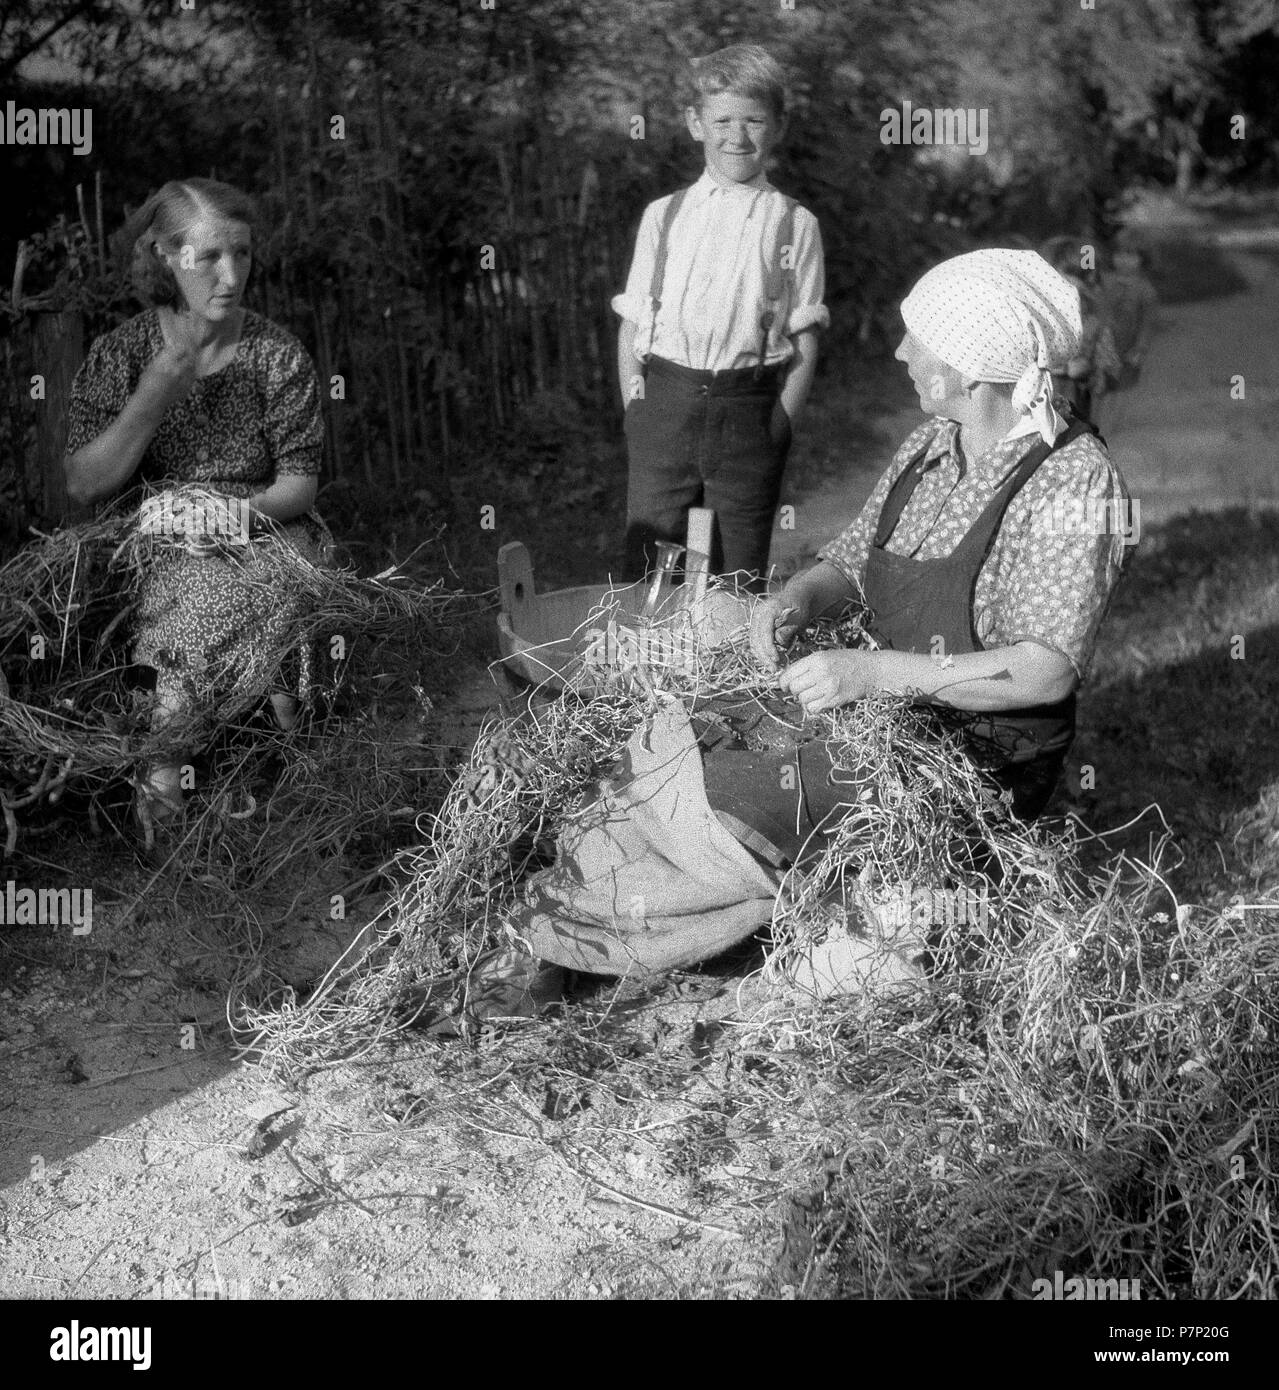 Agricoltrici, circa Da 1945 a 1955, area circostante di Freiburg, Germania Foto Stock